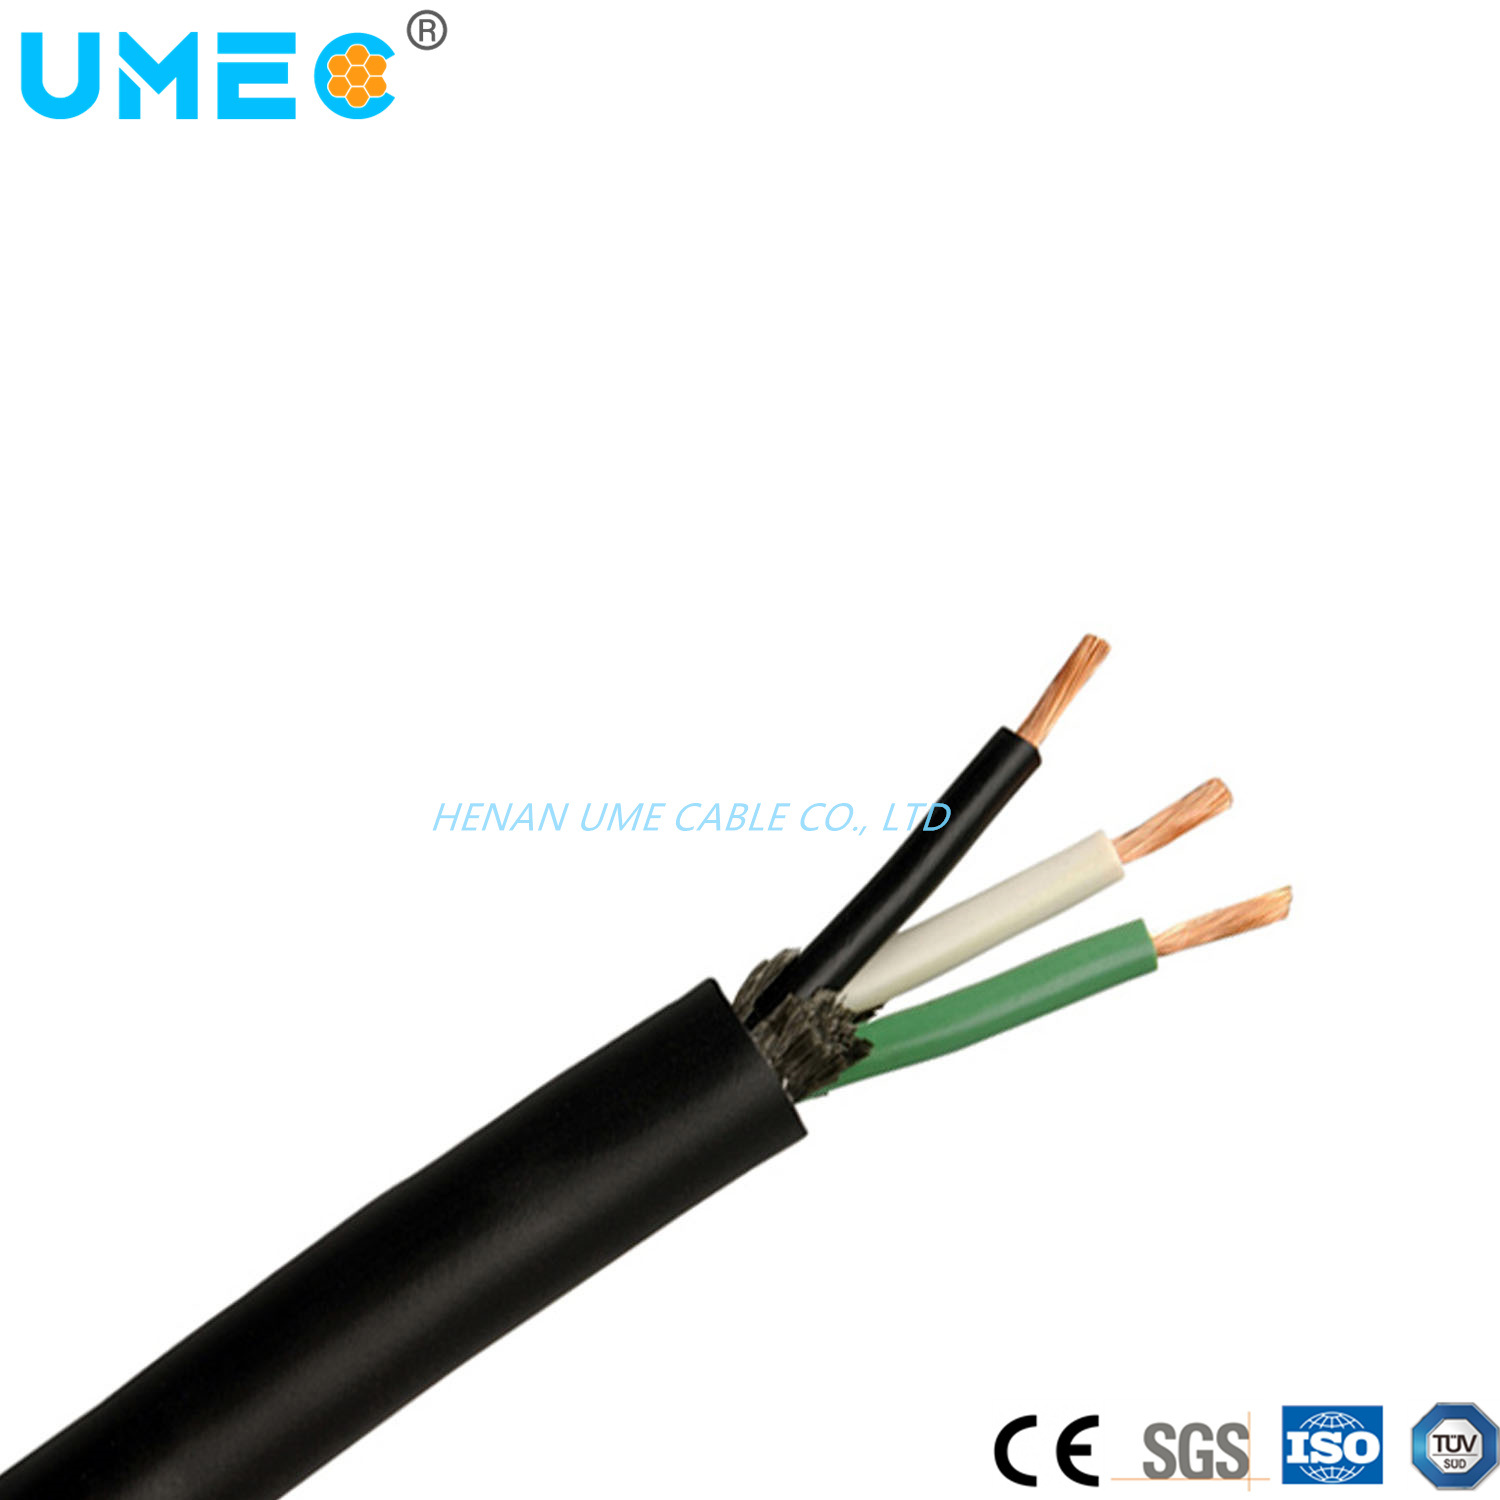 
                300/500В 450/750В Электрогармонизированный стандарт Промышленные кабели H05BB-F /H07bb-F 2X2,5 Резиновый кабельный провод 3X1,5 4X0,75 мм2
            